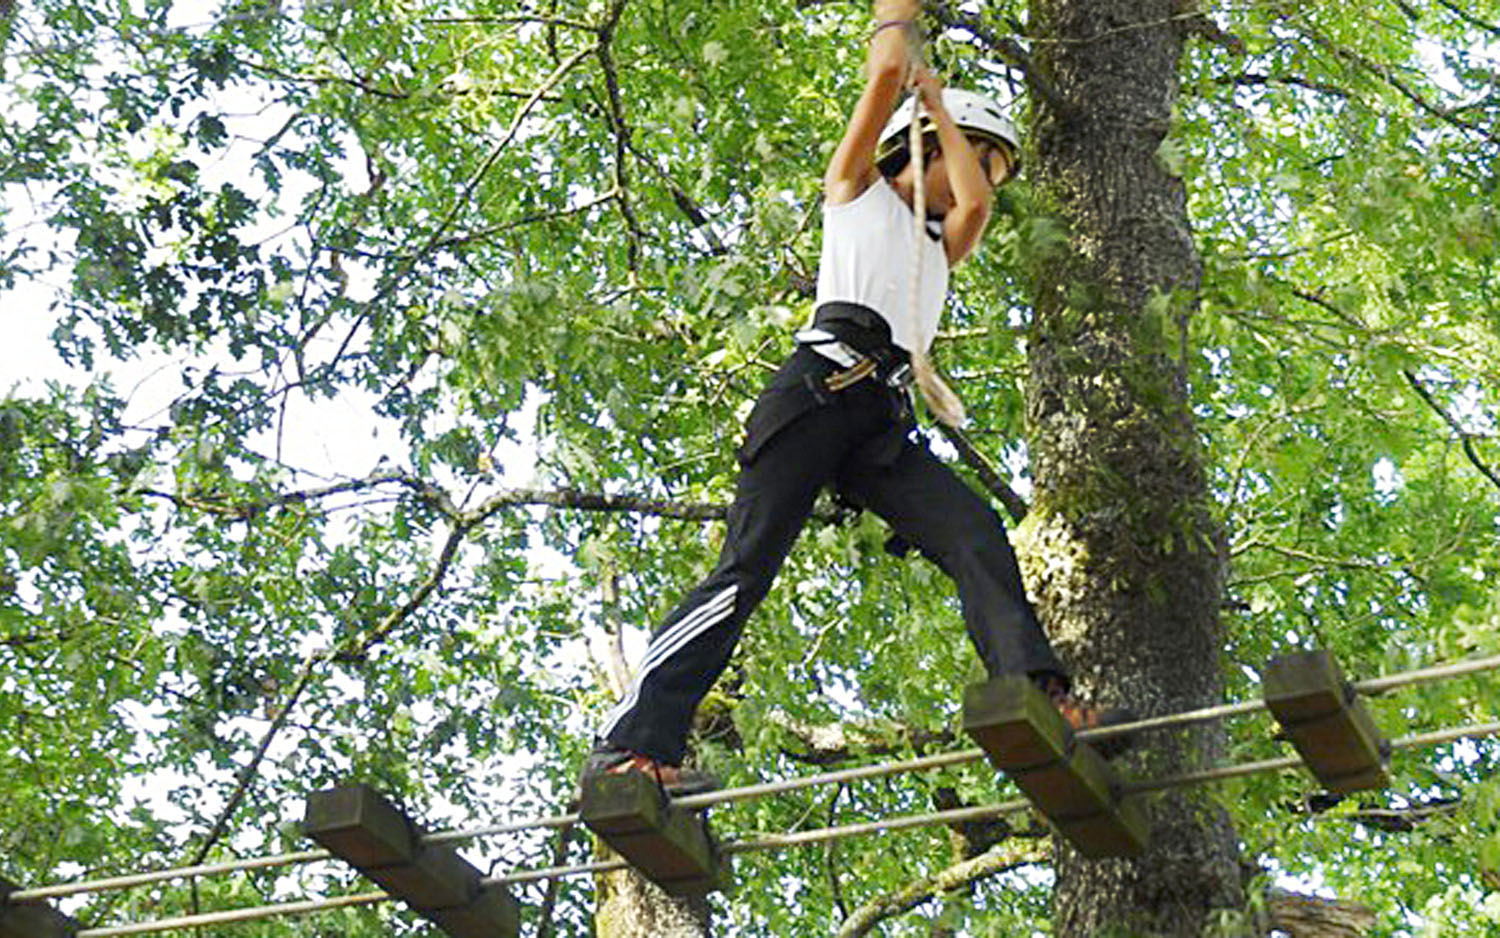 Girl practicing arborism at the Artamendia Adventure Park